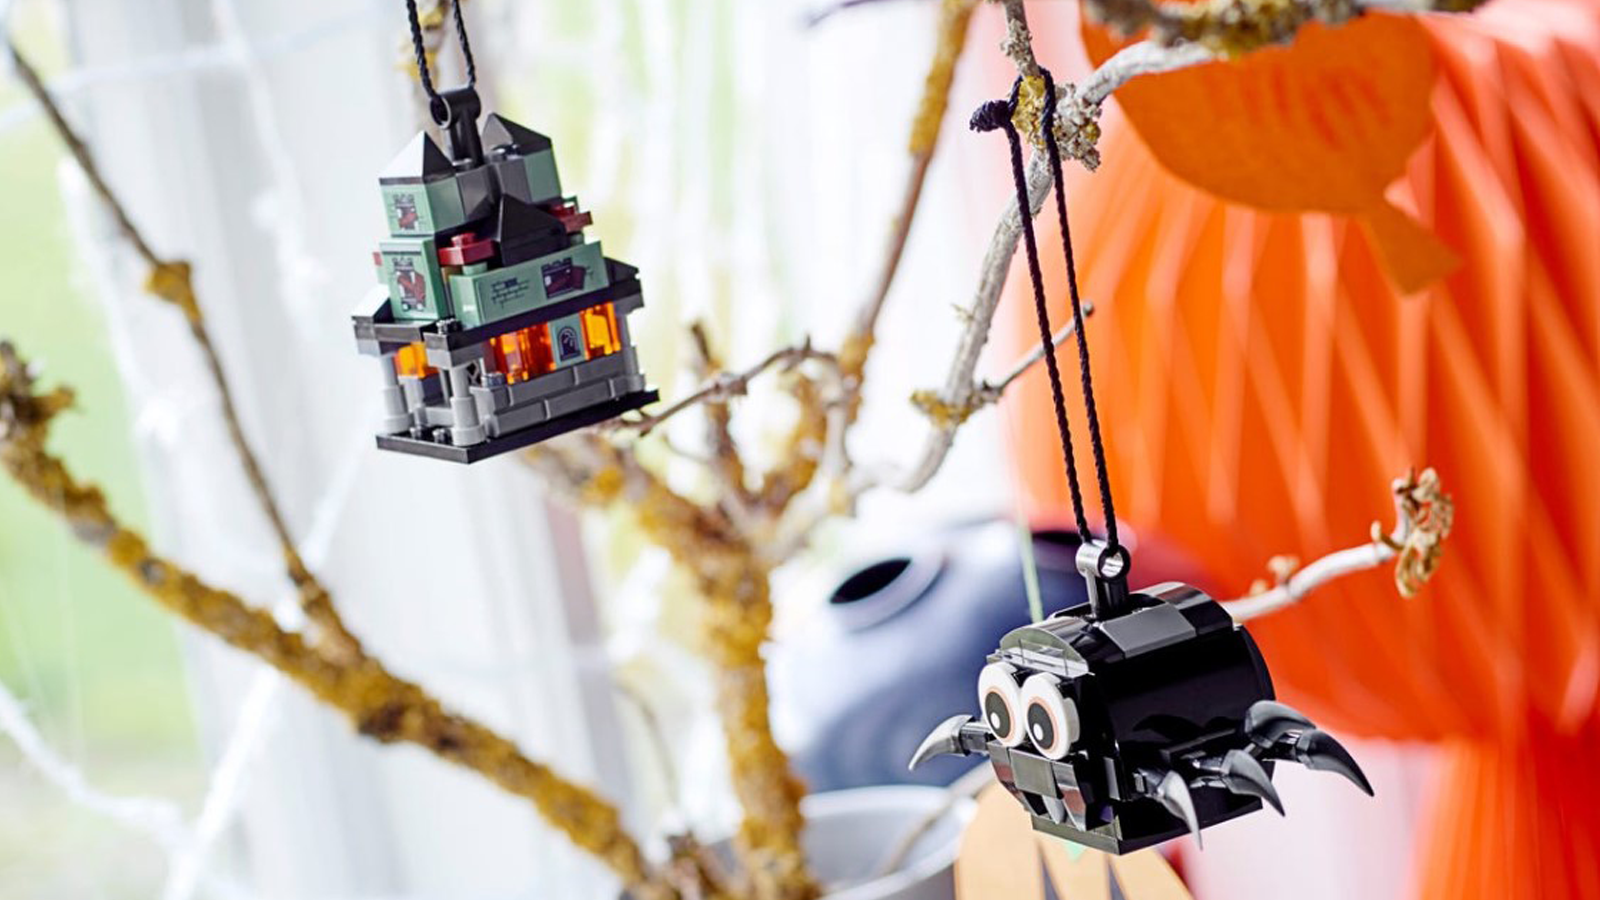 Bộ đồ chơi LEGO Spider & Ngôi nhà ma ám treo trên cây với kiểu trang trí theo mùa khác